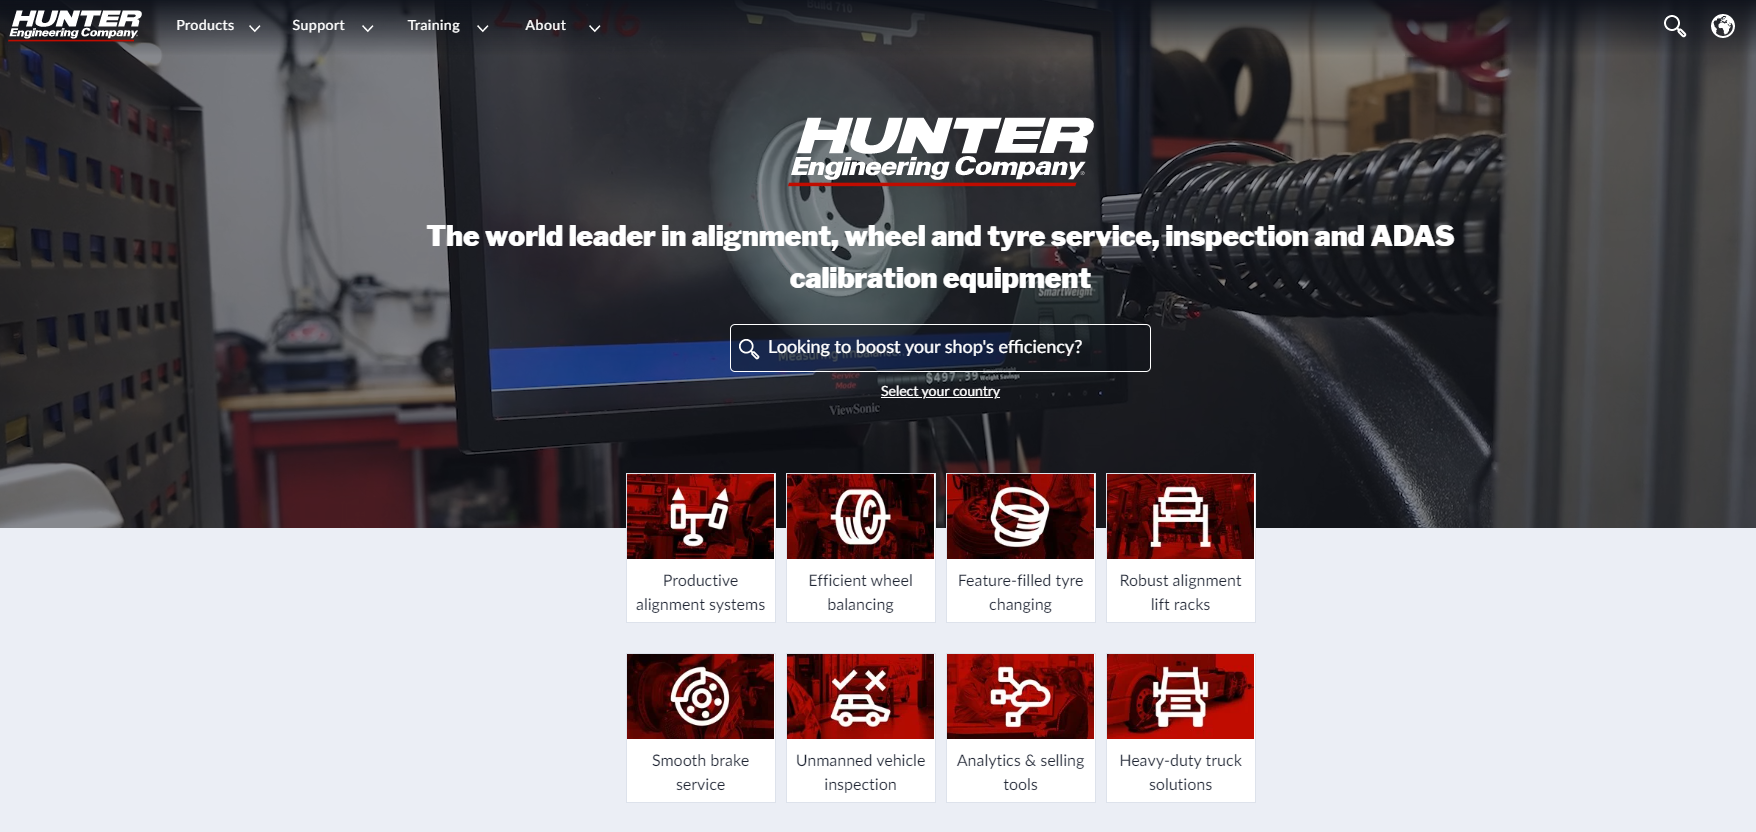 Strona firmy Hunter, zajmującej się inżynierią mechaniczną, wyróżnia się filmikiem i ikonami usług